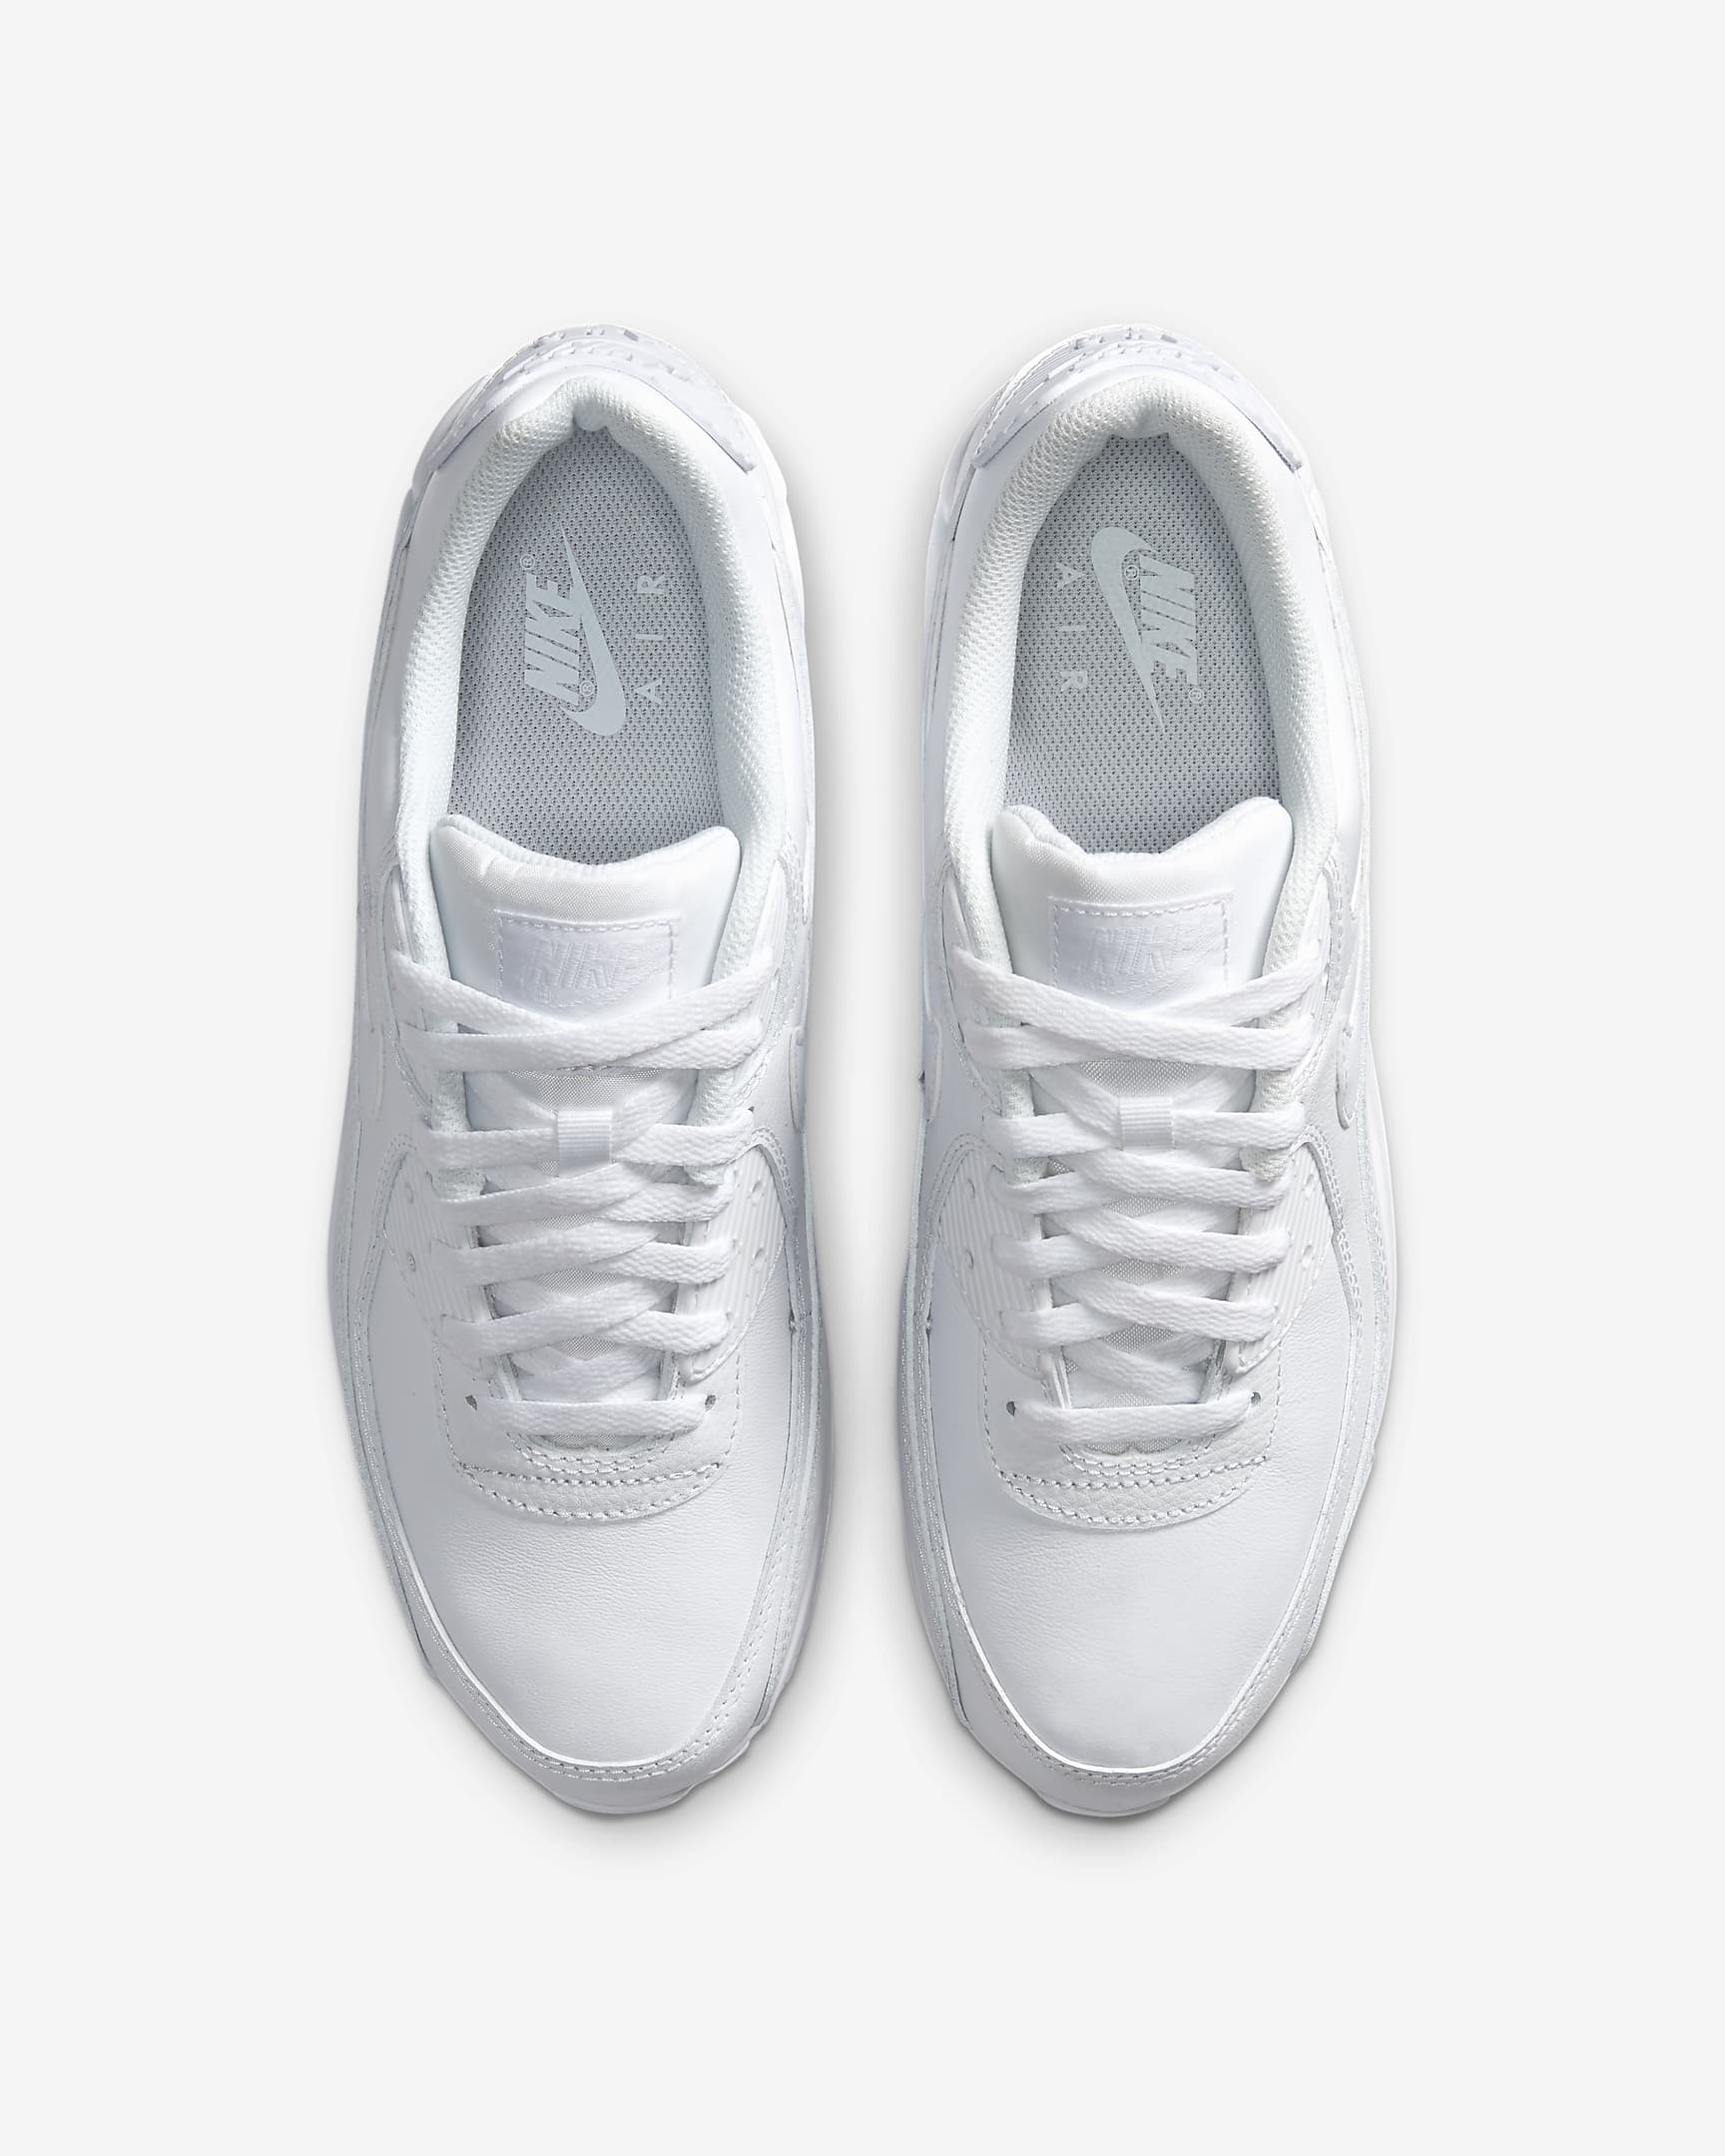 Air Max 90 LTR Men's Shoes - White/White/White